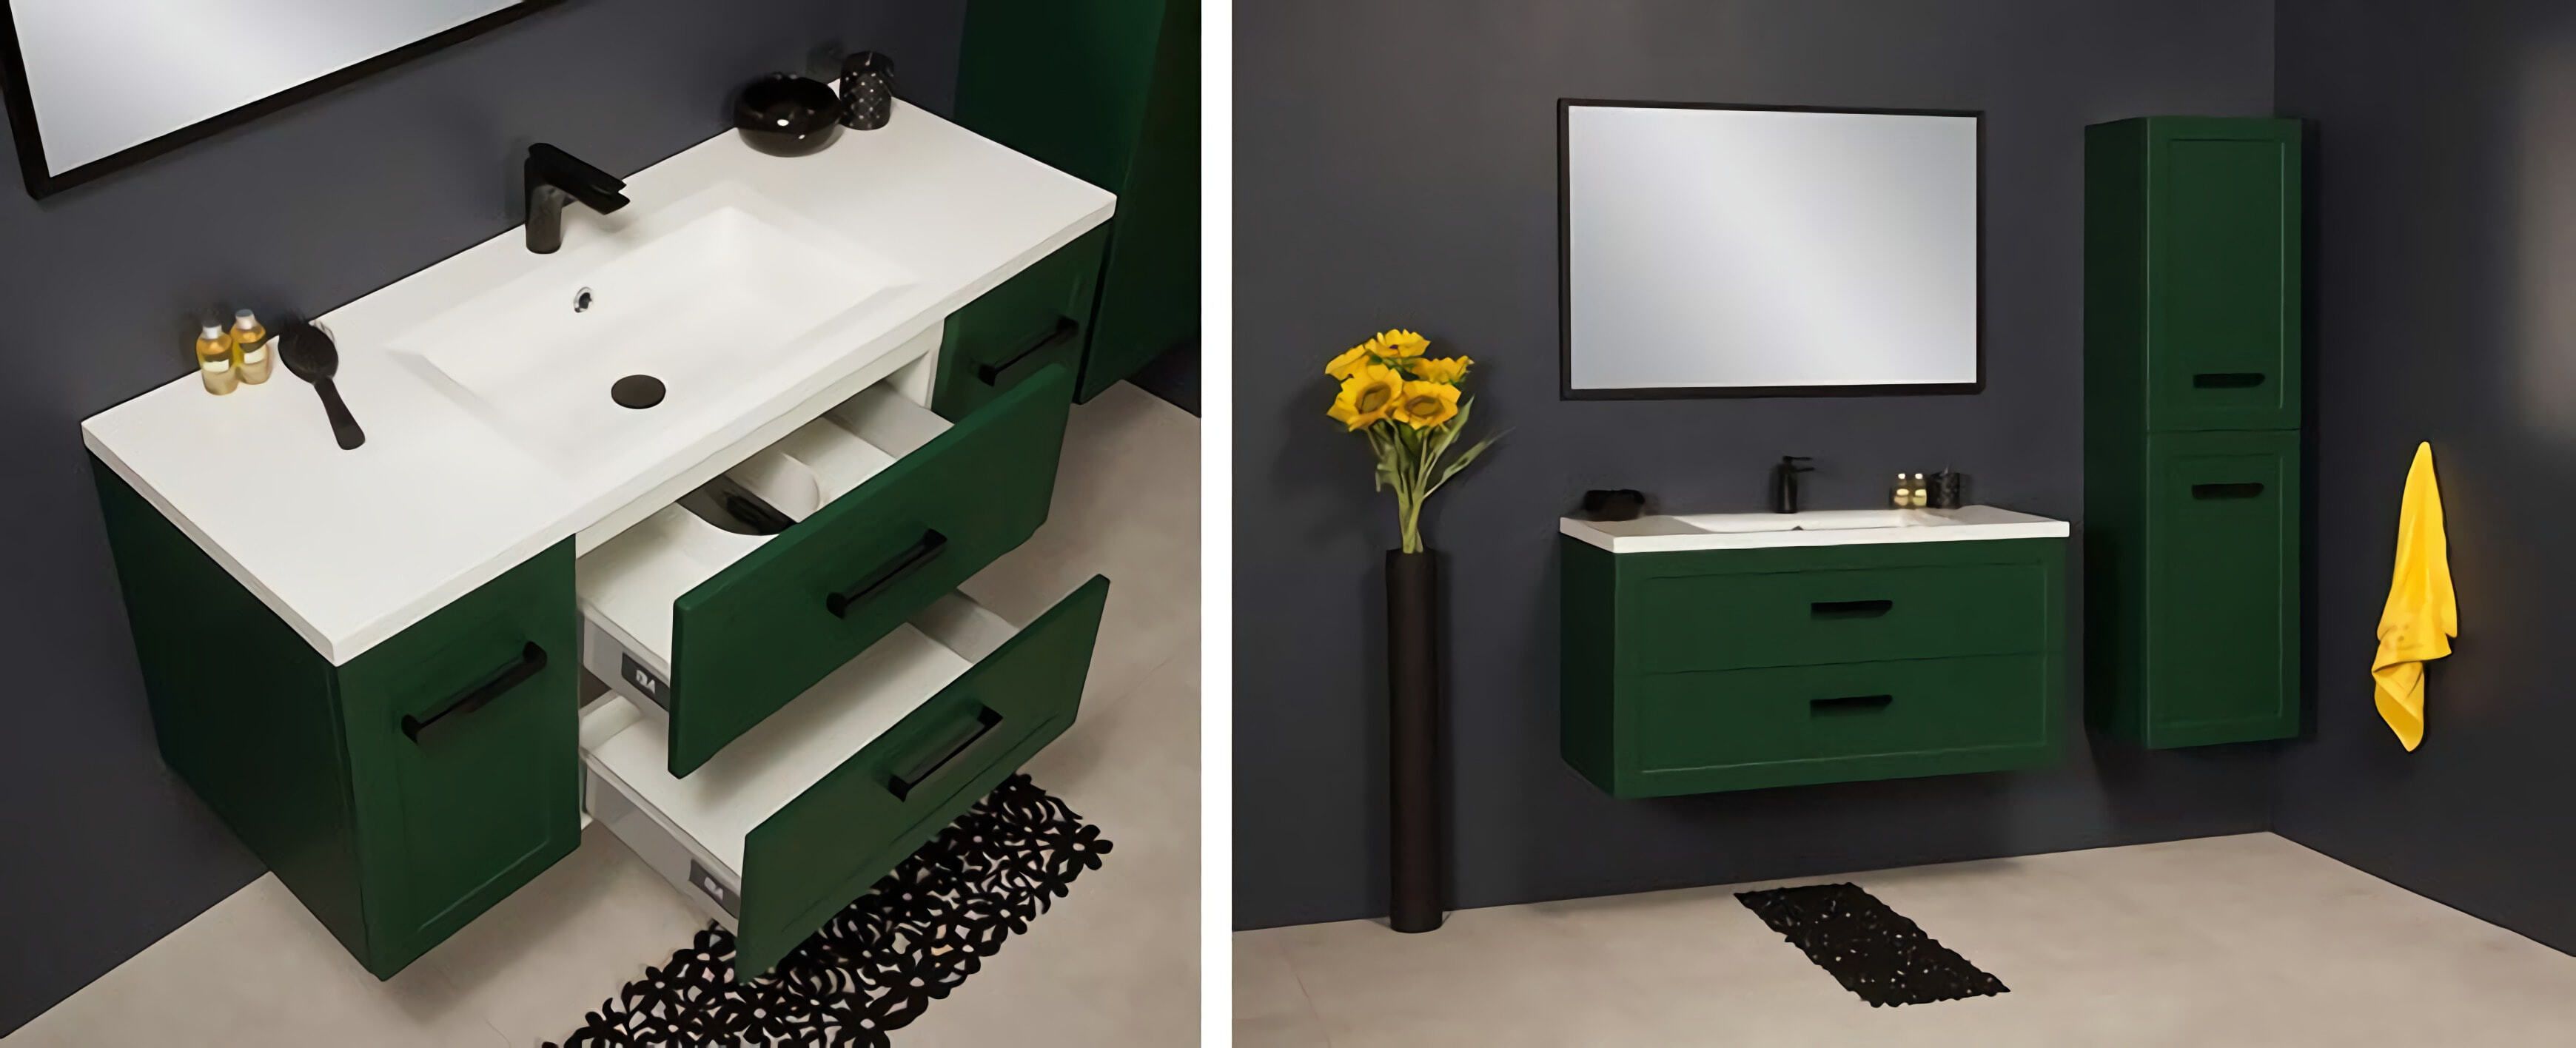 зеленая мебель, современная ванная, зеленая мебель для ванной